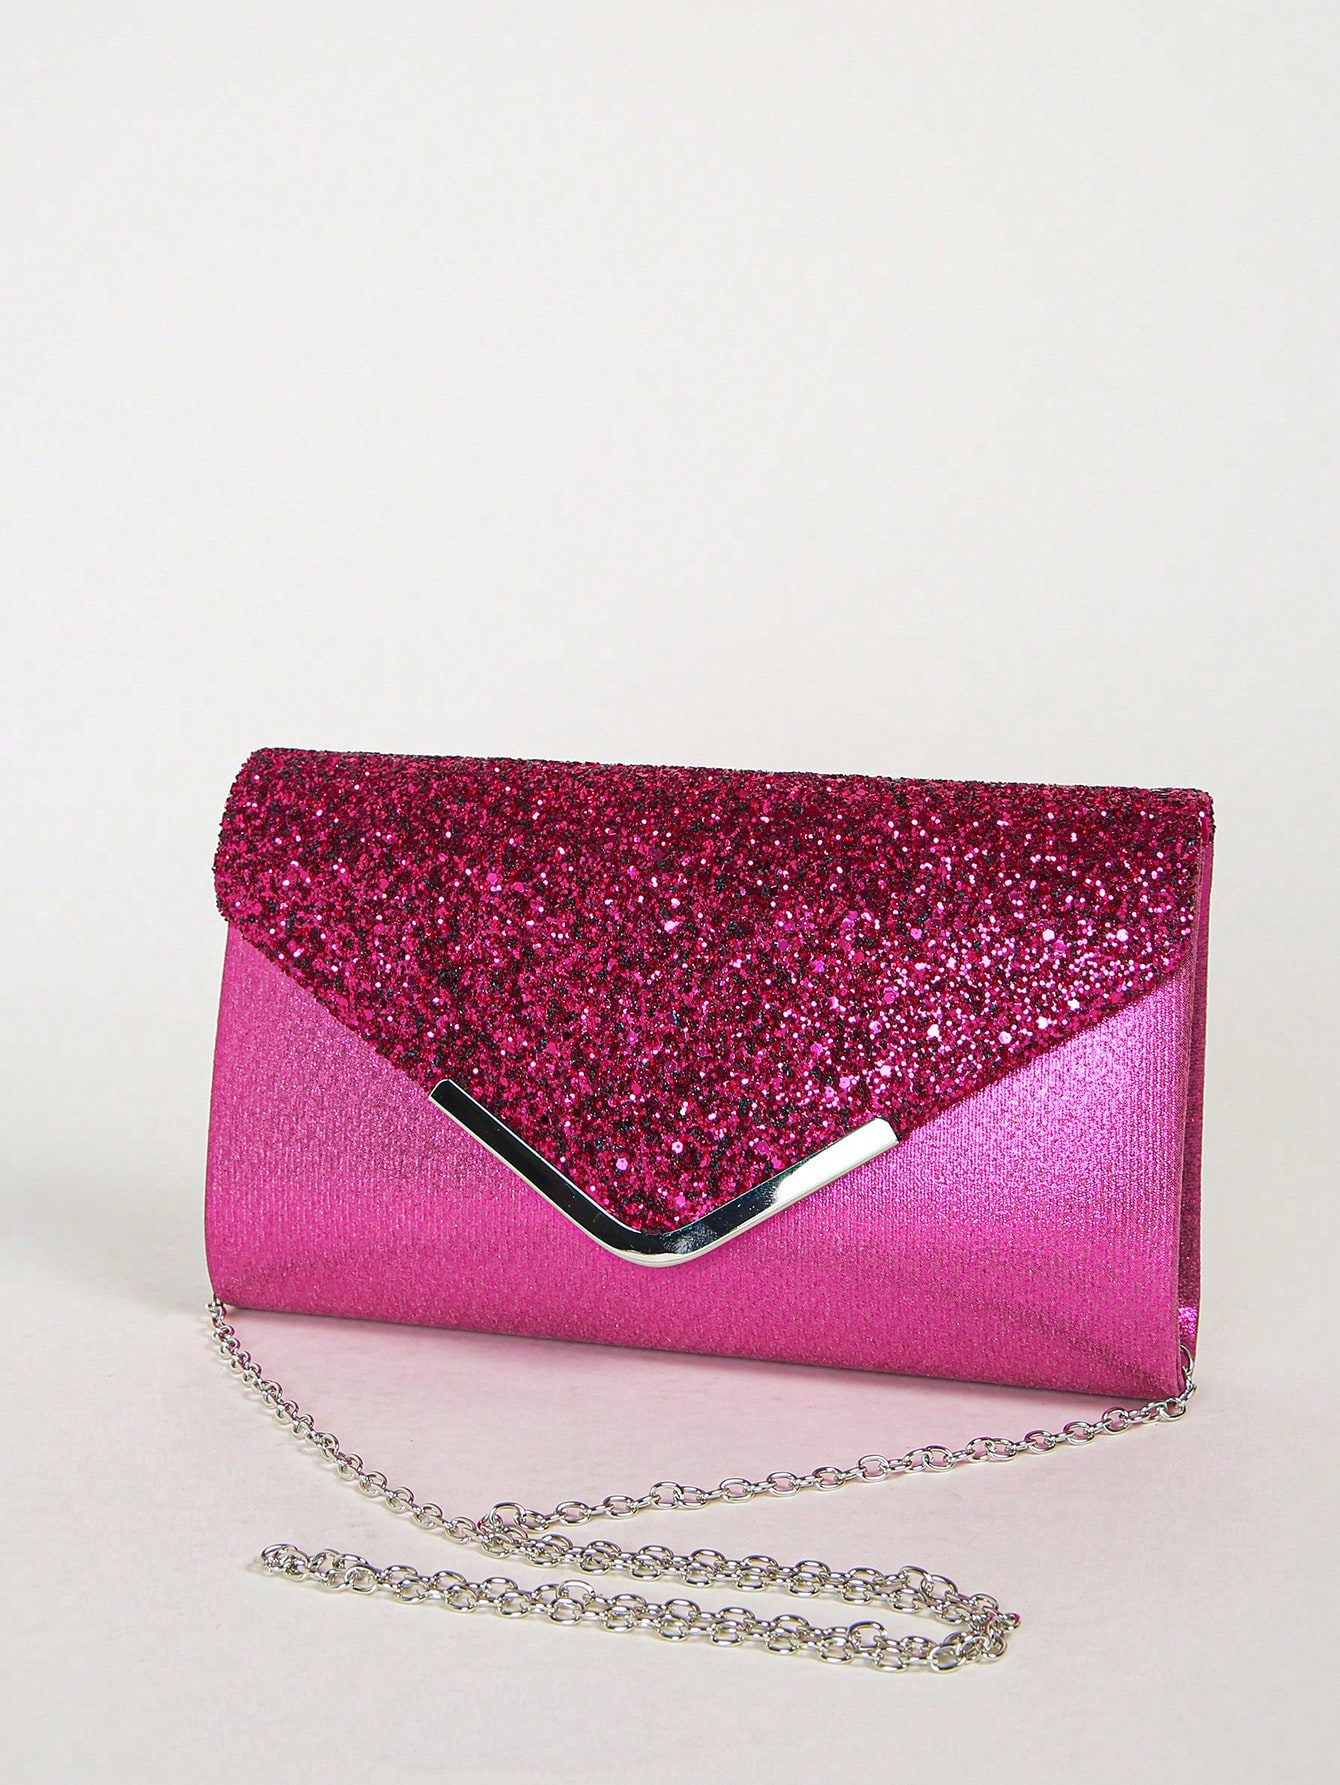 Женская вечерняя сумка-конверт, ярко-розовый блестящая блестящая сумка стразы в форме облака роскошная вечерняя сумка клатч для ужина вечеринки кошелек женская сумка через плечо су